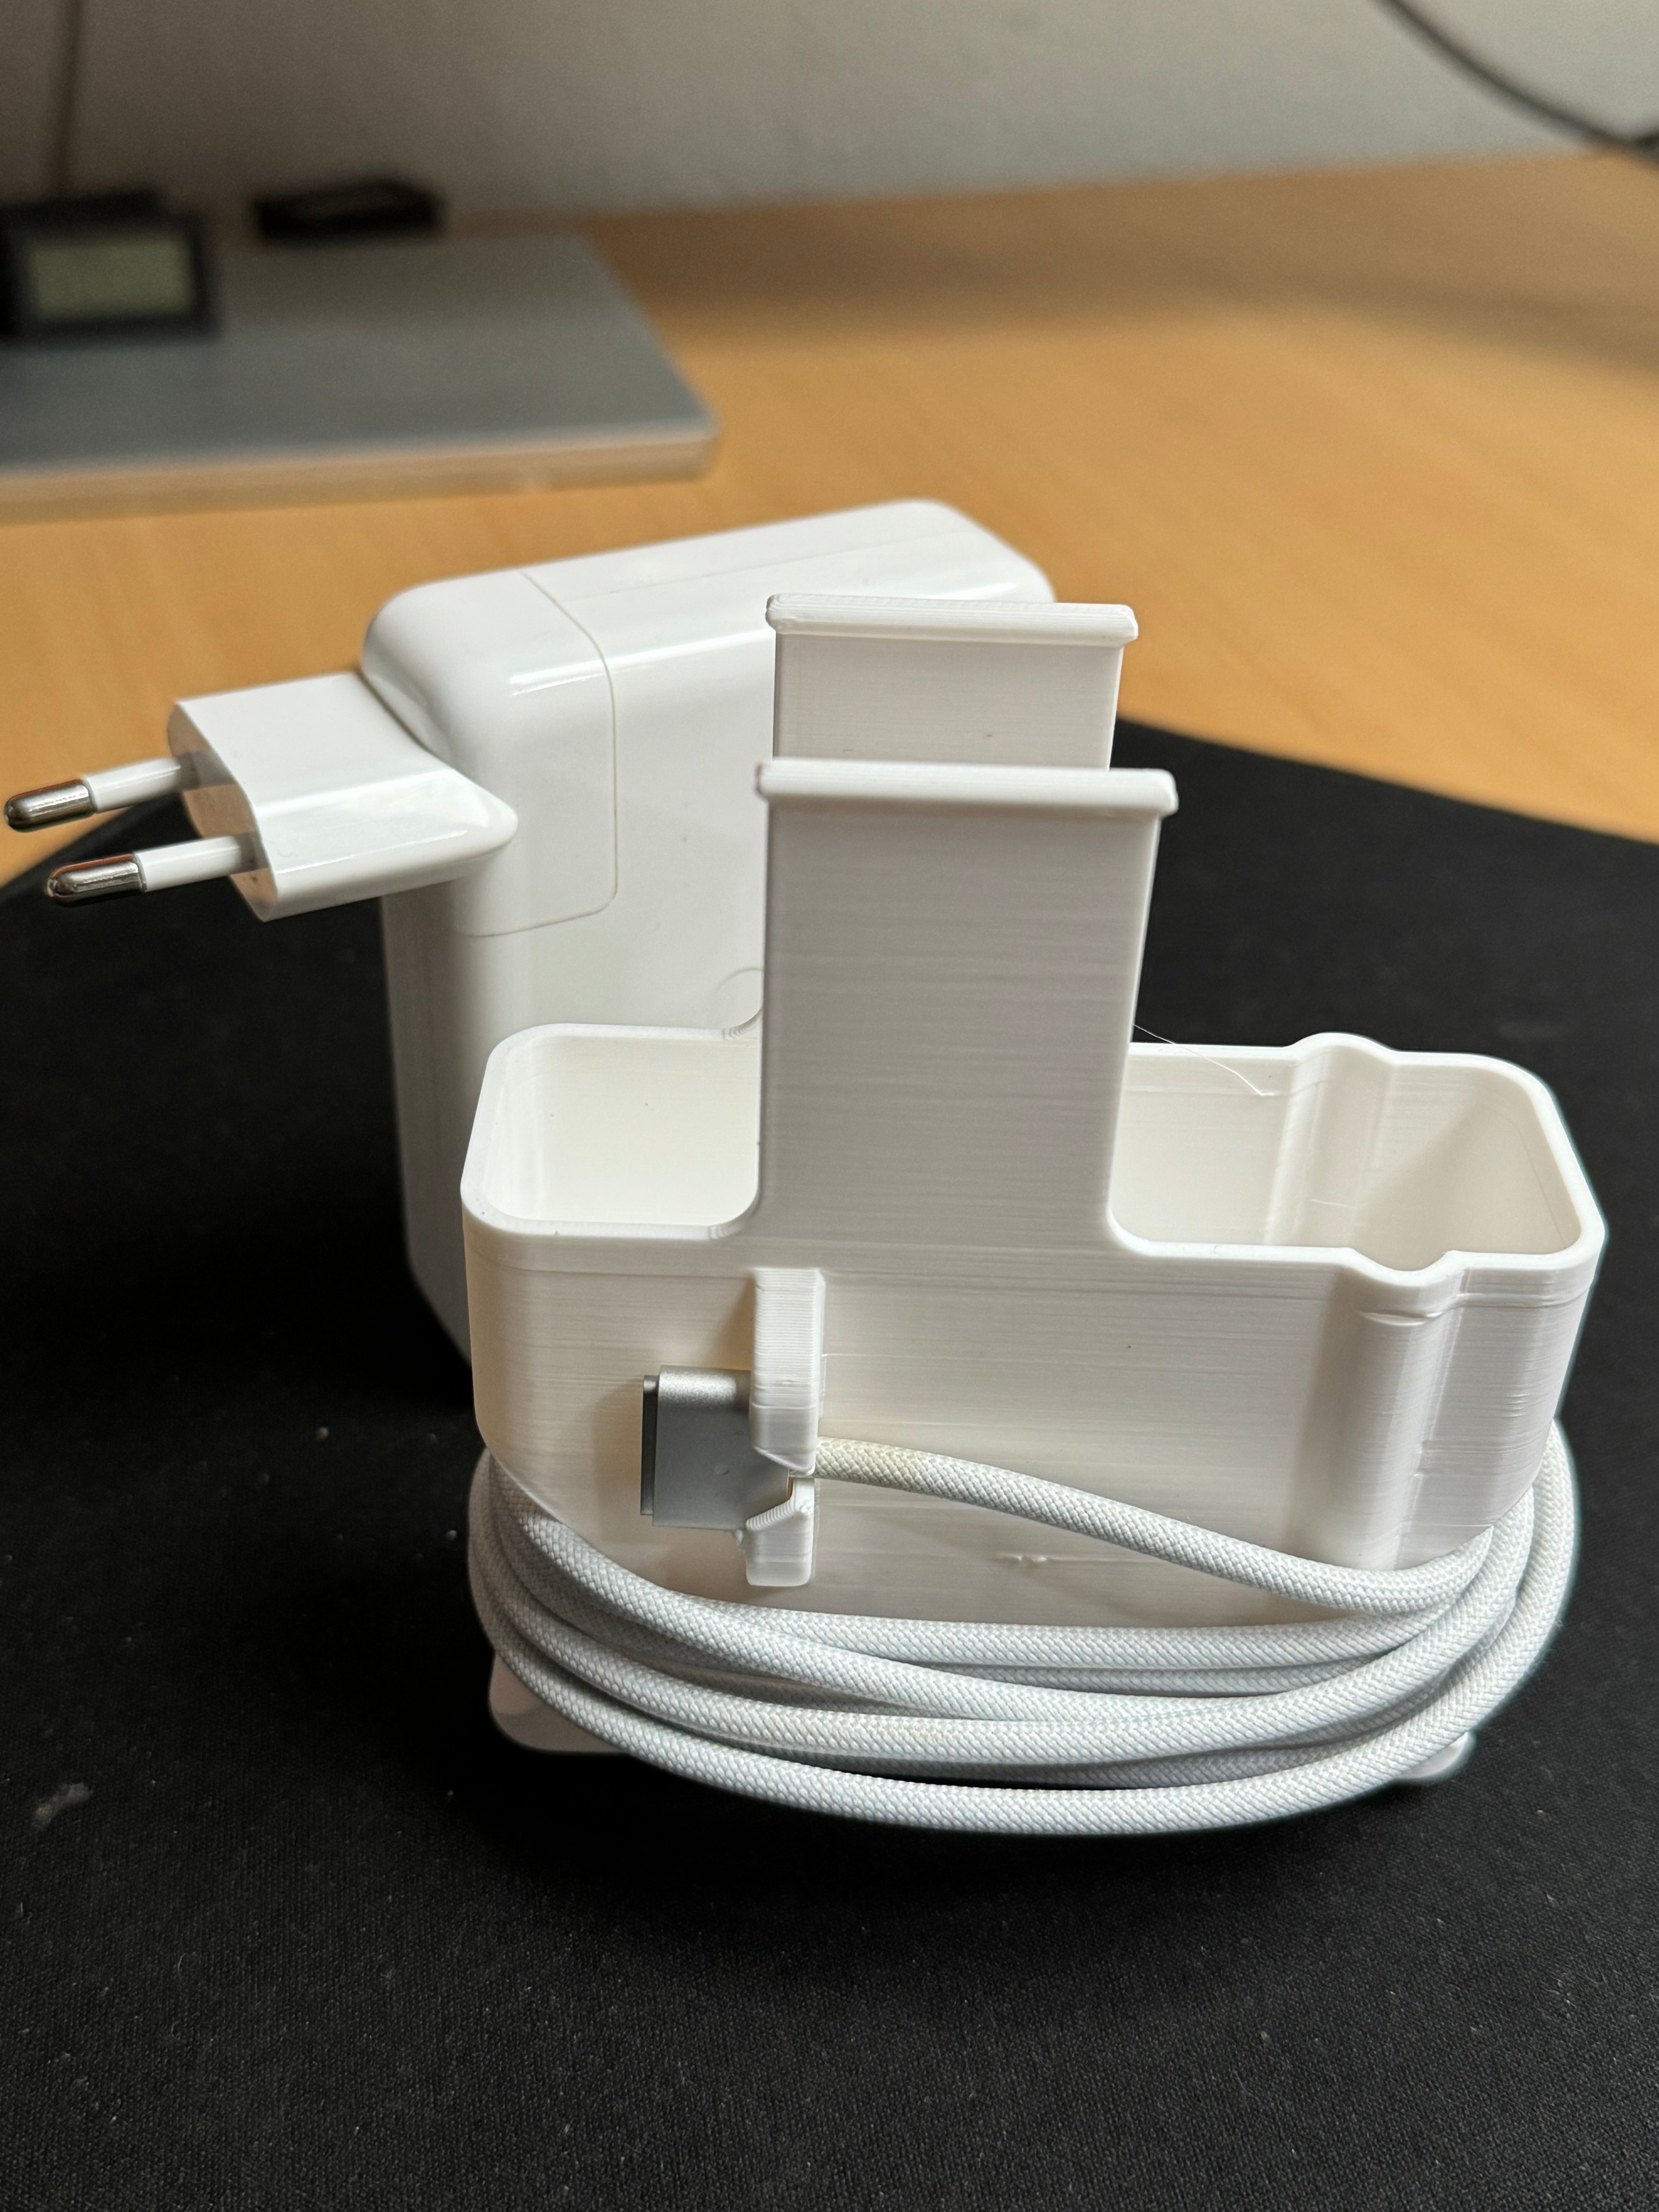 Protección y gestor de cables para el cargador de 140 W del Macbook Pro